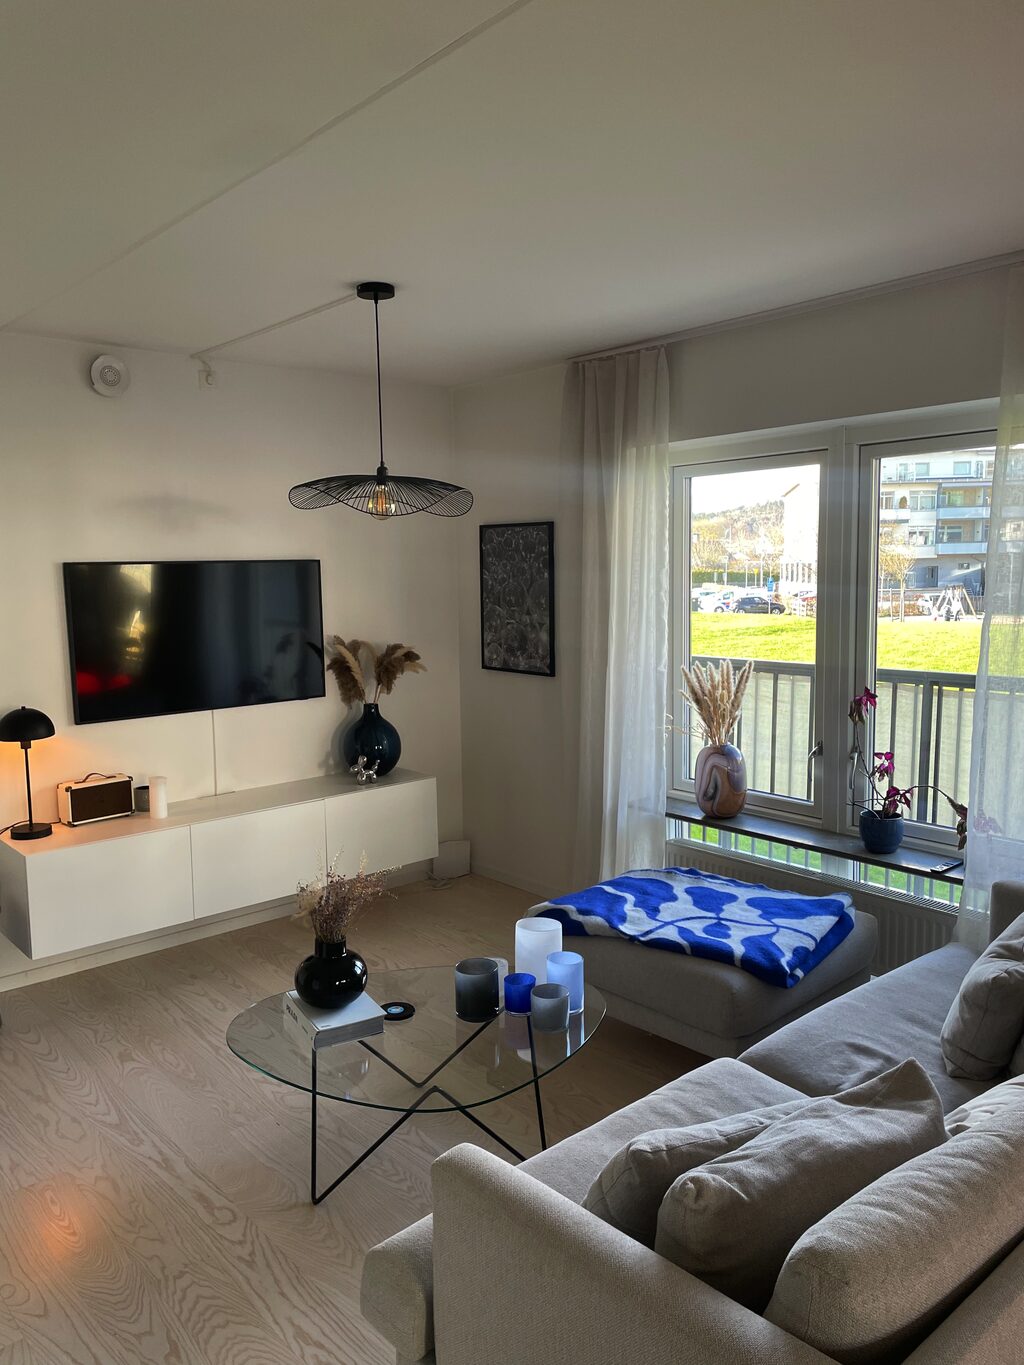 Lägenhetsbyte - Åby Allé 73